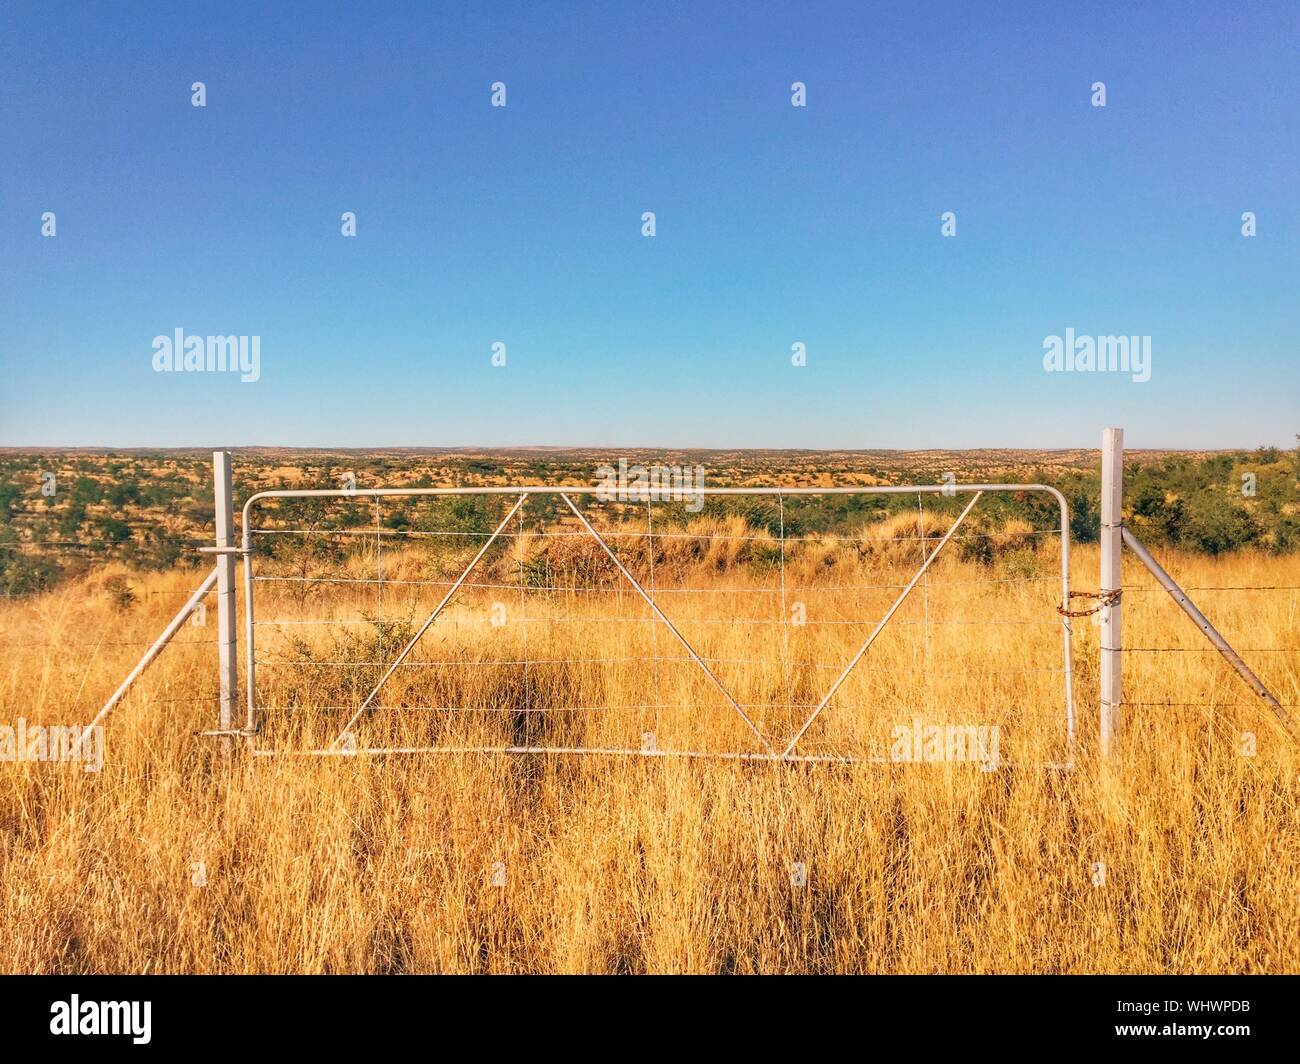 Porte métallique fermé en champ agricole contre Ciel Bleu clair Photo Stock  - Alamy